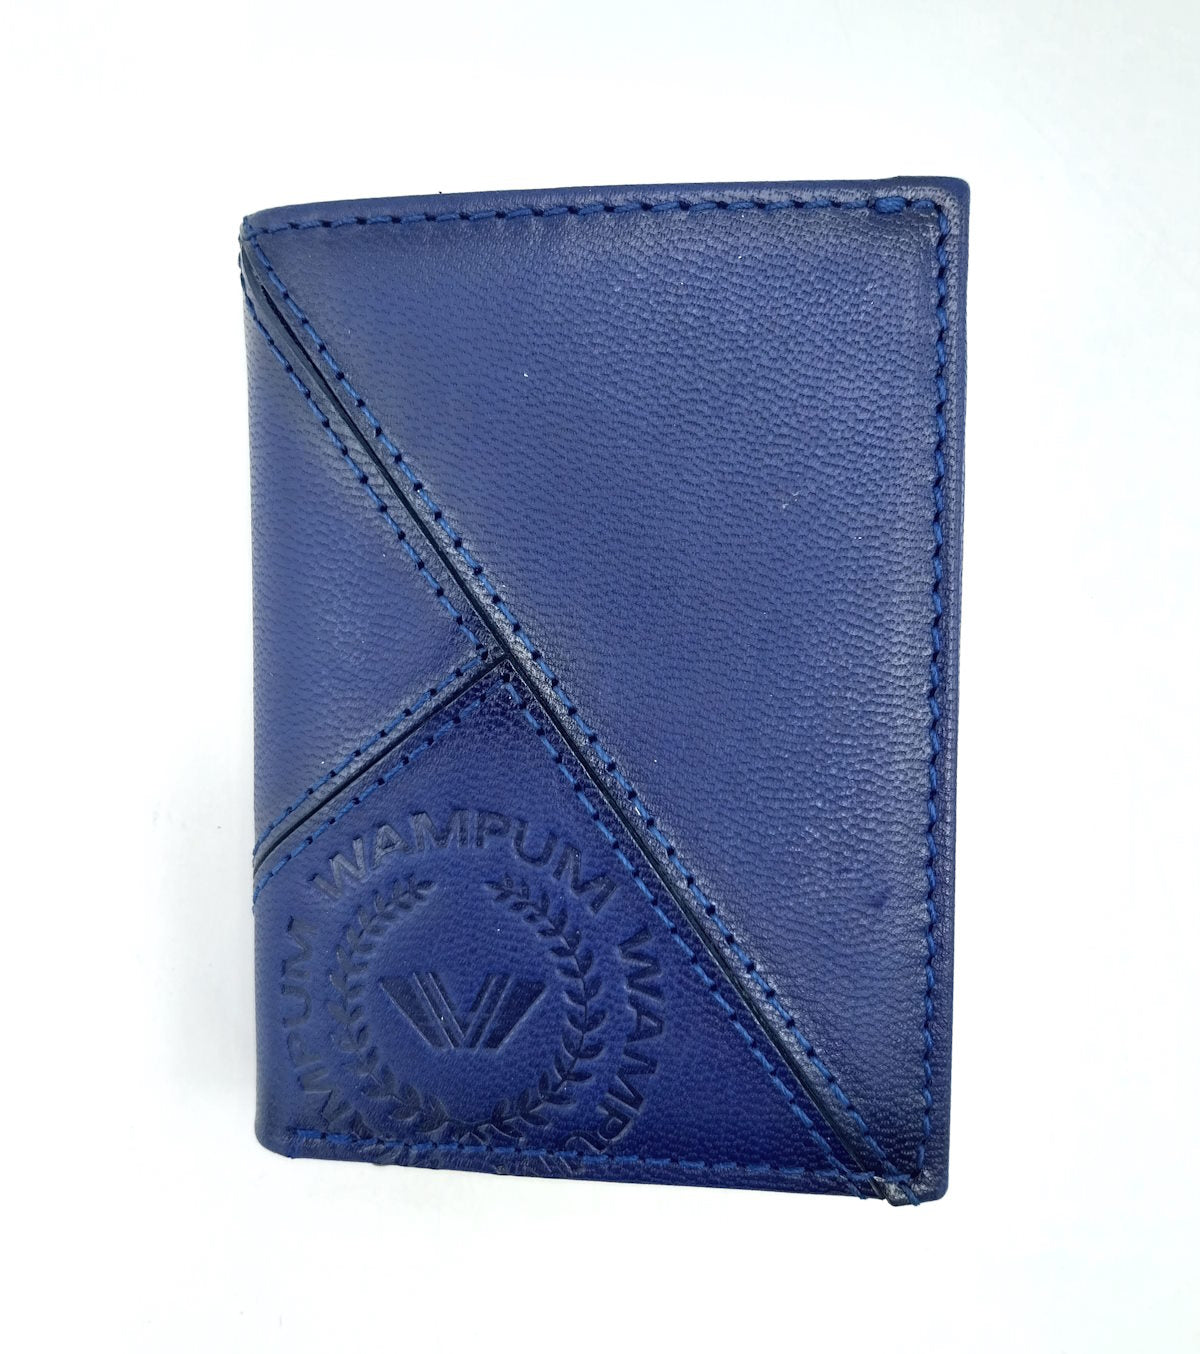 Genuine leather wallet, Wampum, art. pdk396-82